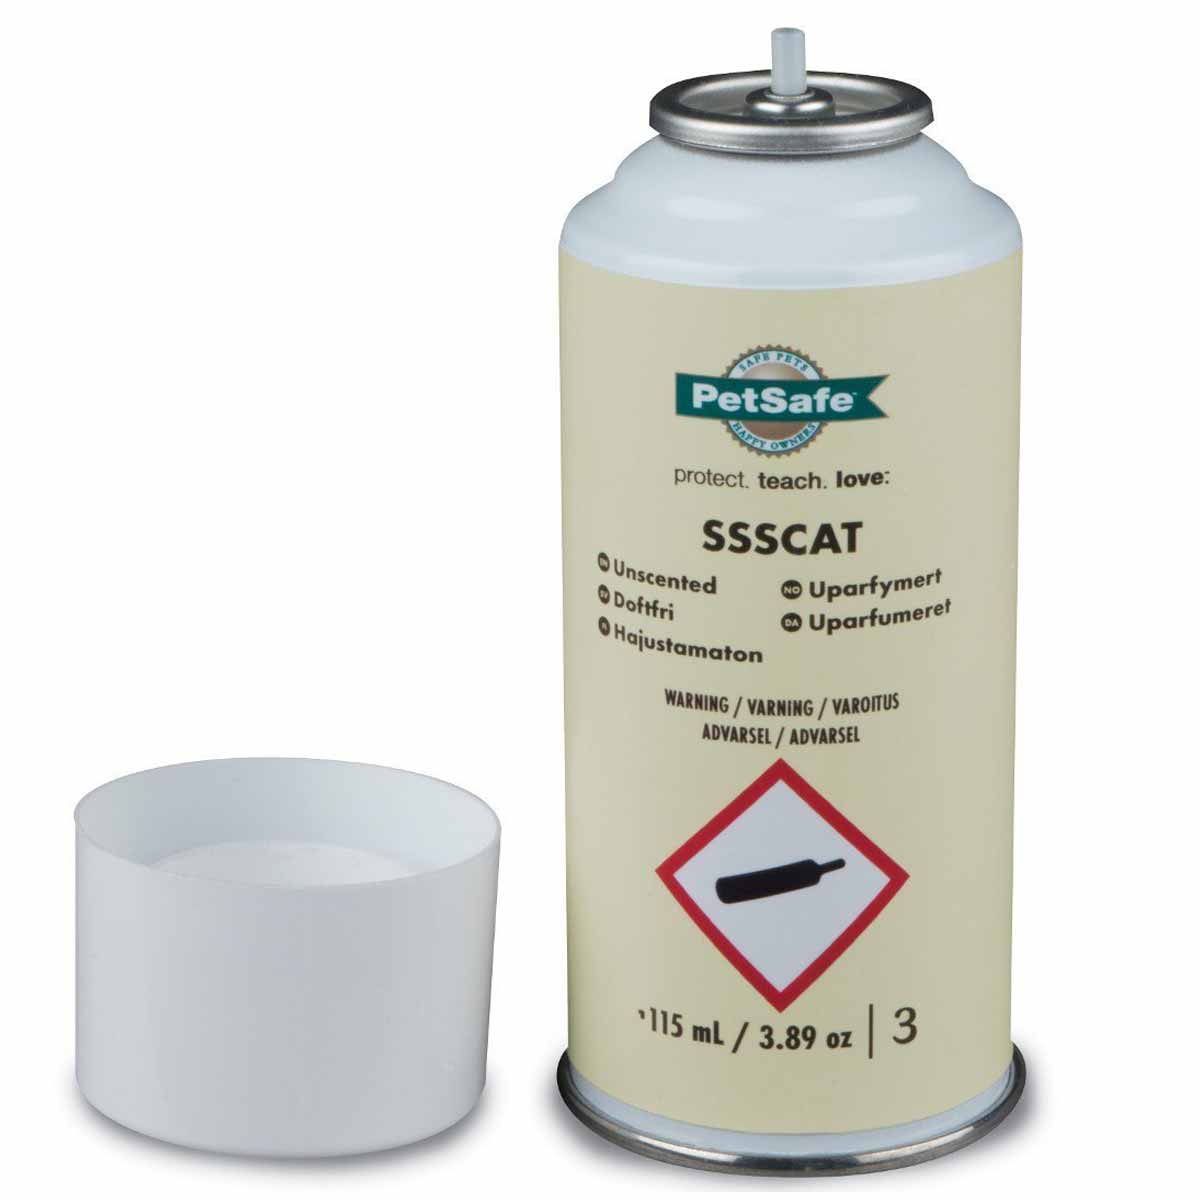 PetSafe refill SSSCAT Multivet 115 ml